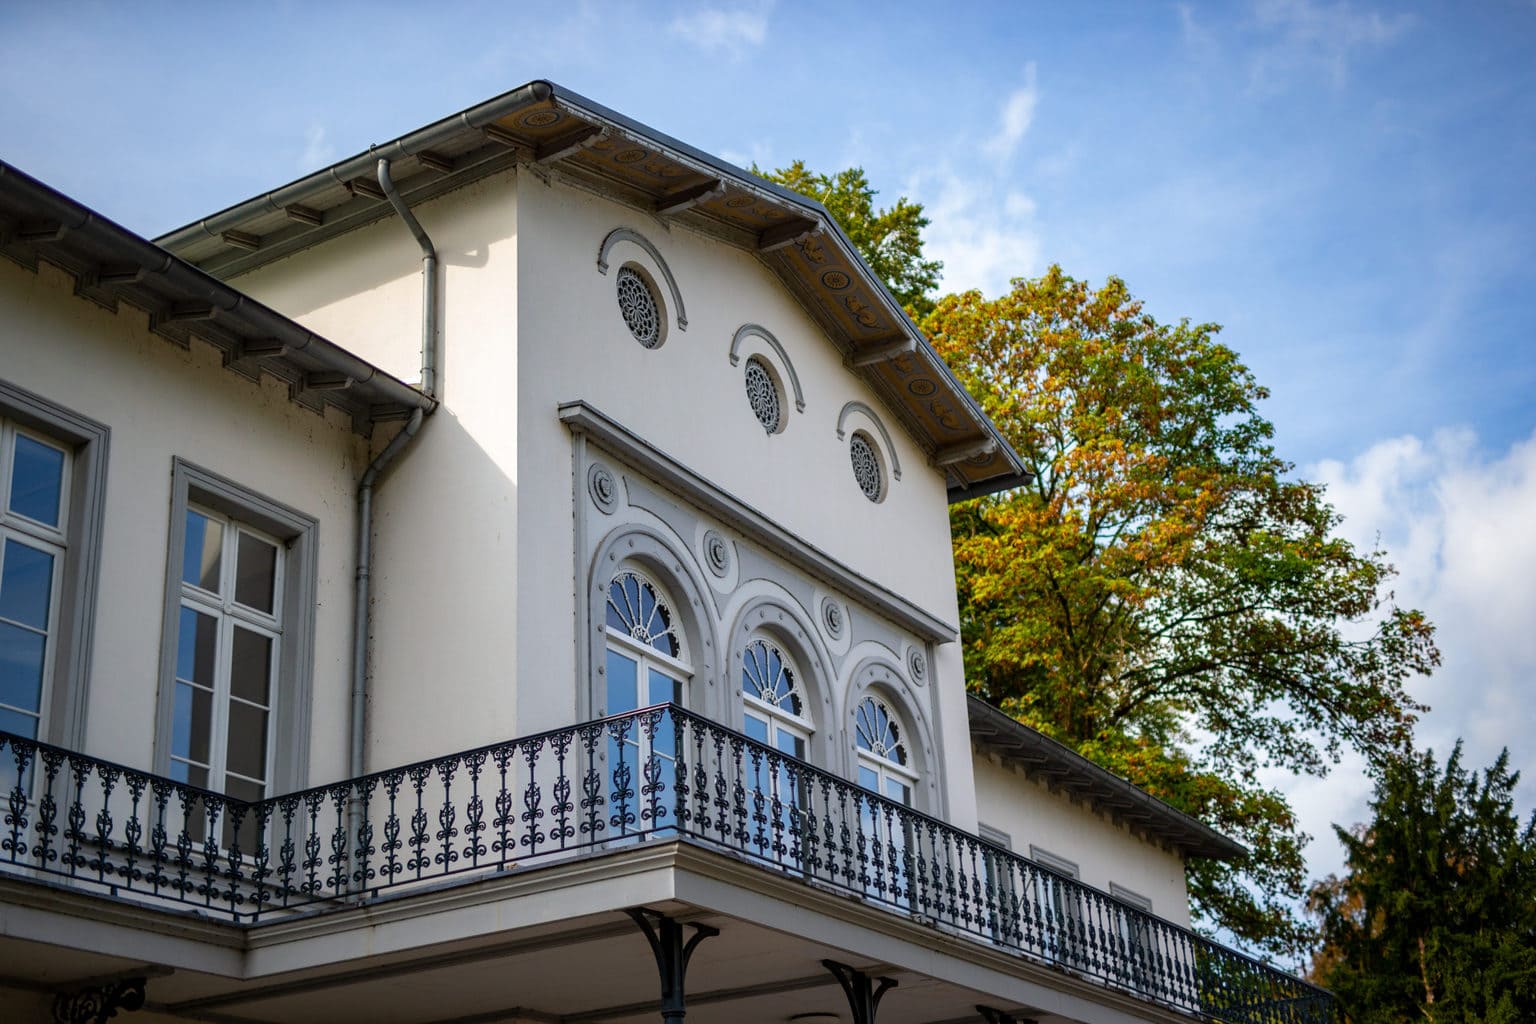 Museum Kurhaus in het Duitse stadje Kleef, waar Joseph Beuys opgegroeid is